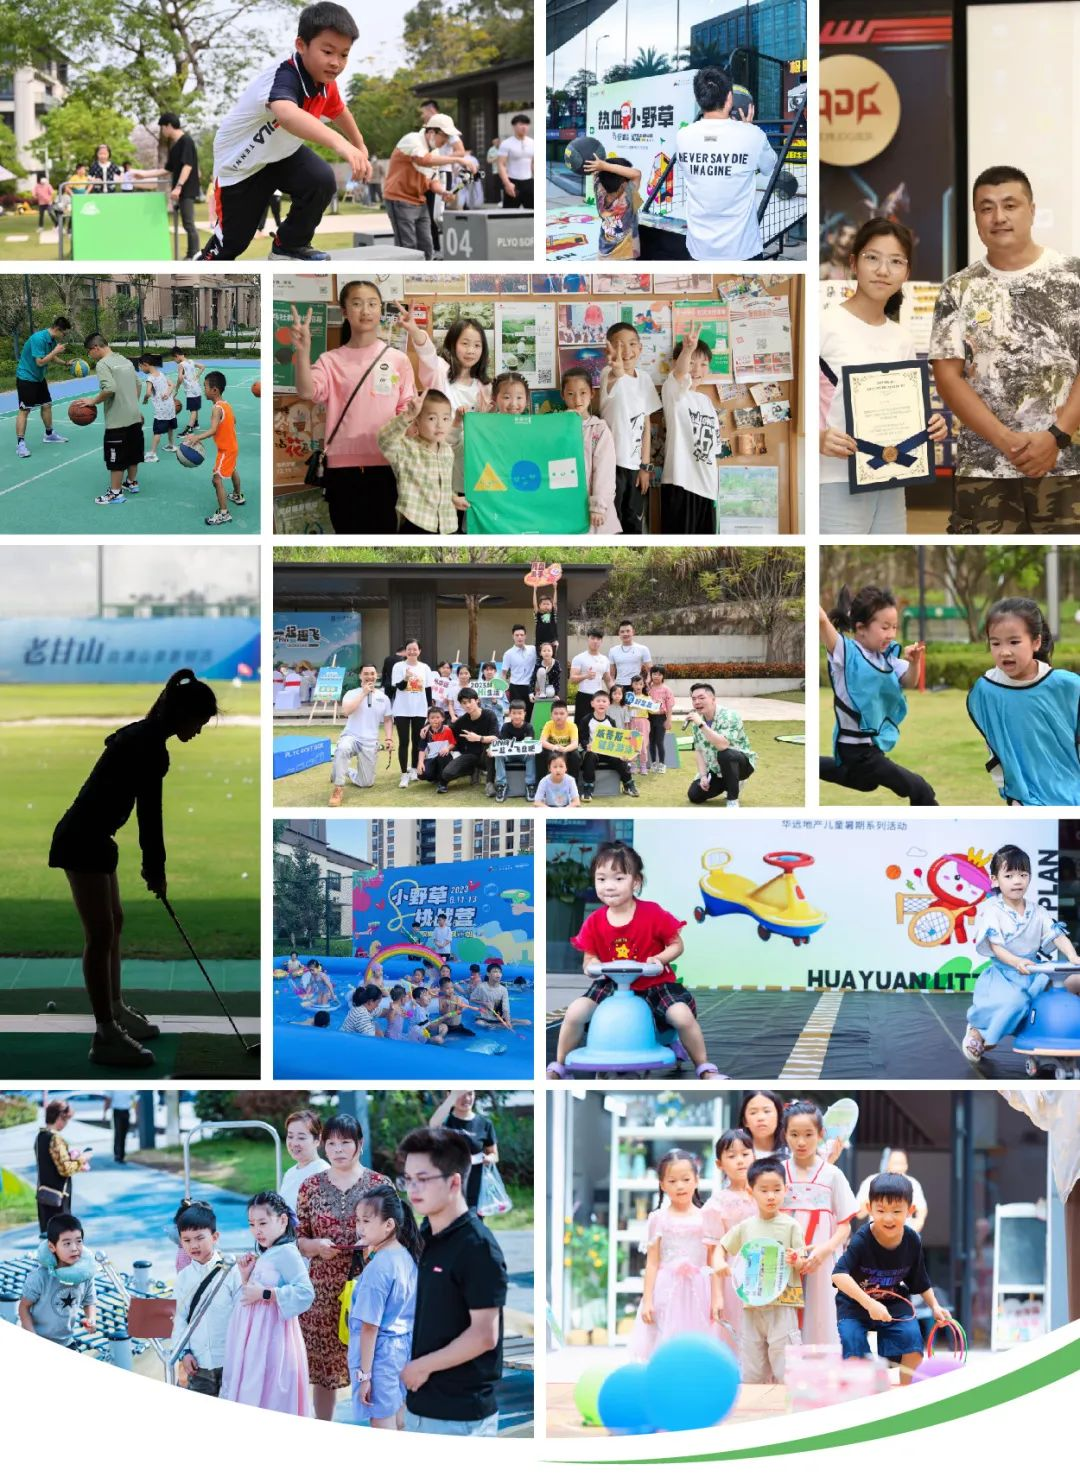 华远Hi平台「小野草计划」第二季完美收官 华远地产升级打造儿童友好型社区